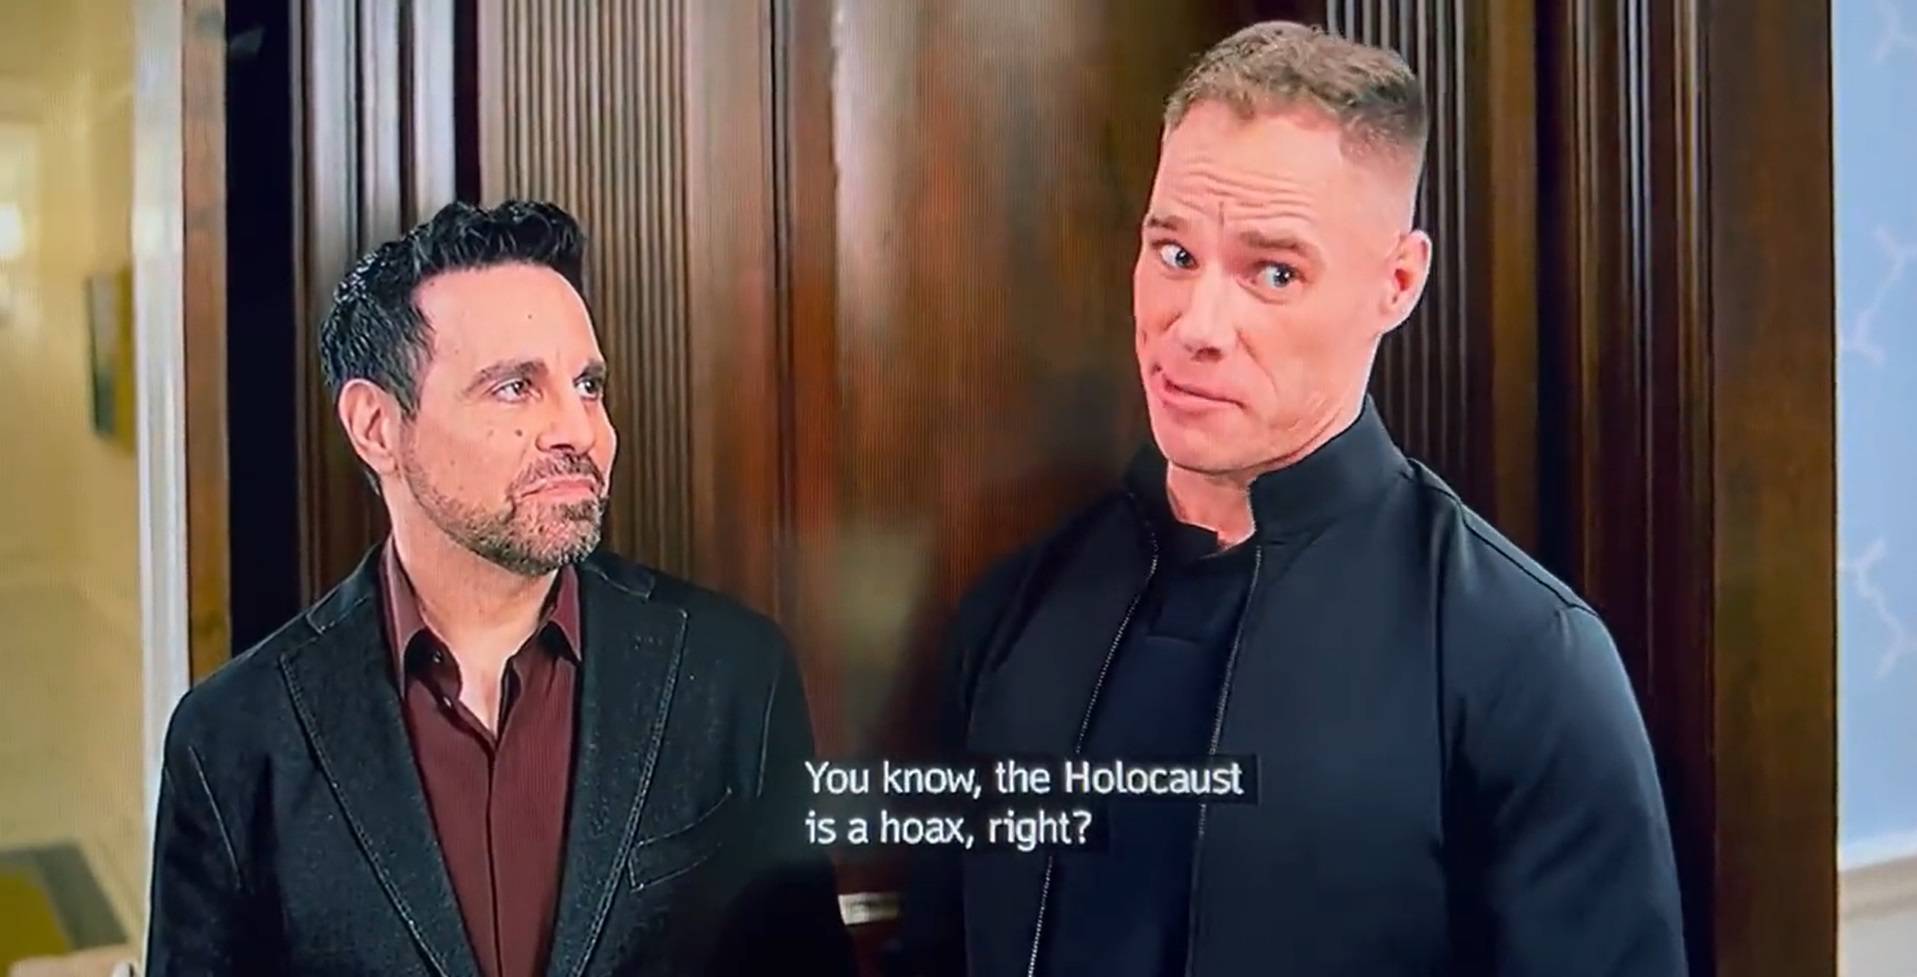 Komentar o holokaustu u novoj epizodi 'Seksa i grada' naljutio gledatelje: 'Nije bilo smiješno!'